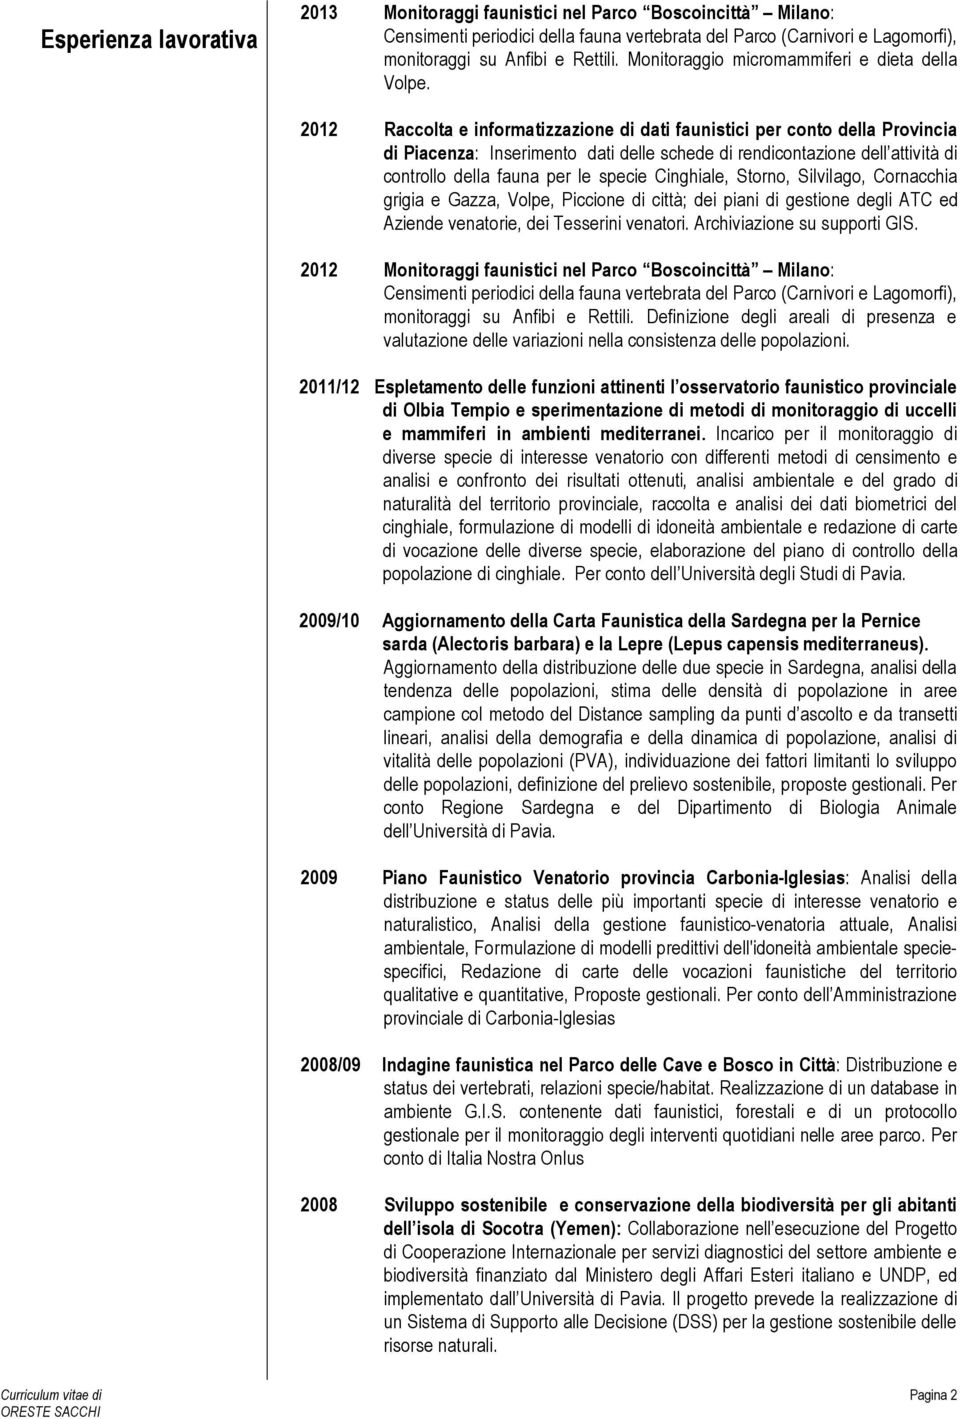 2012 Raccolta e informatizzazione di dati faunistici per conto della Provincia di Piacenza: Inserimento dati delle schede di rendicontazione dell attività di controllo della fauna per le specie